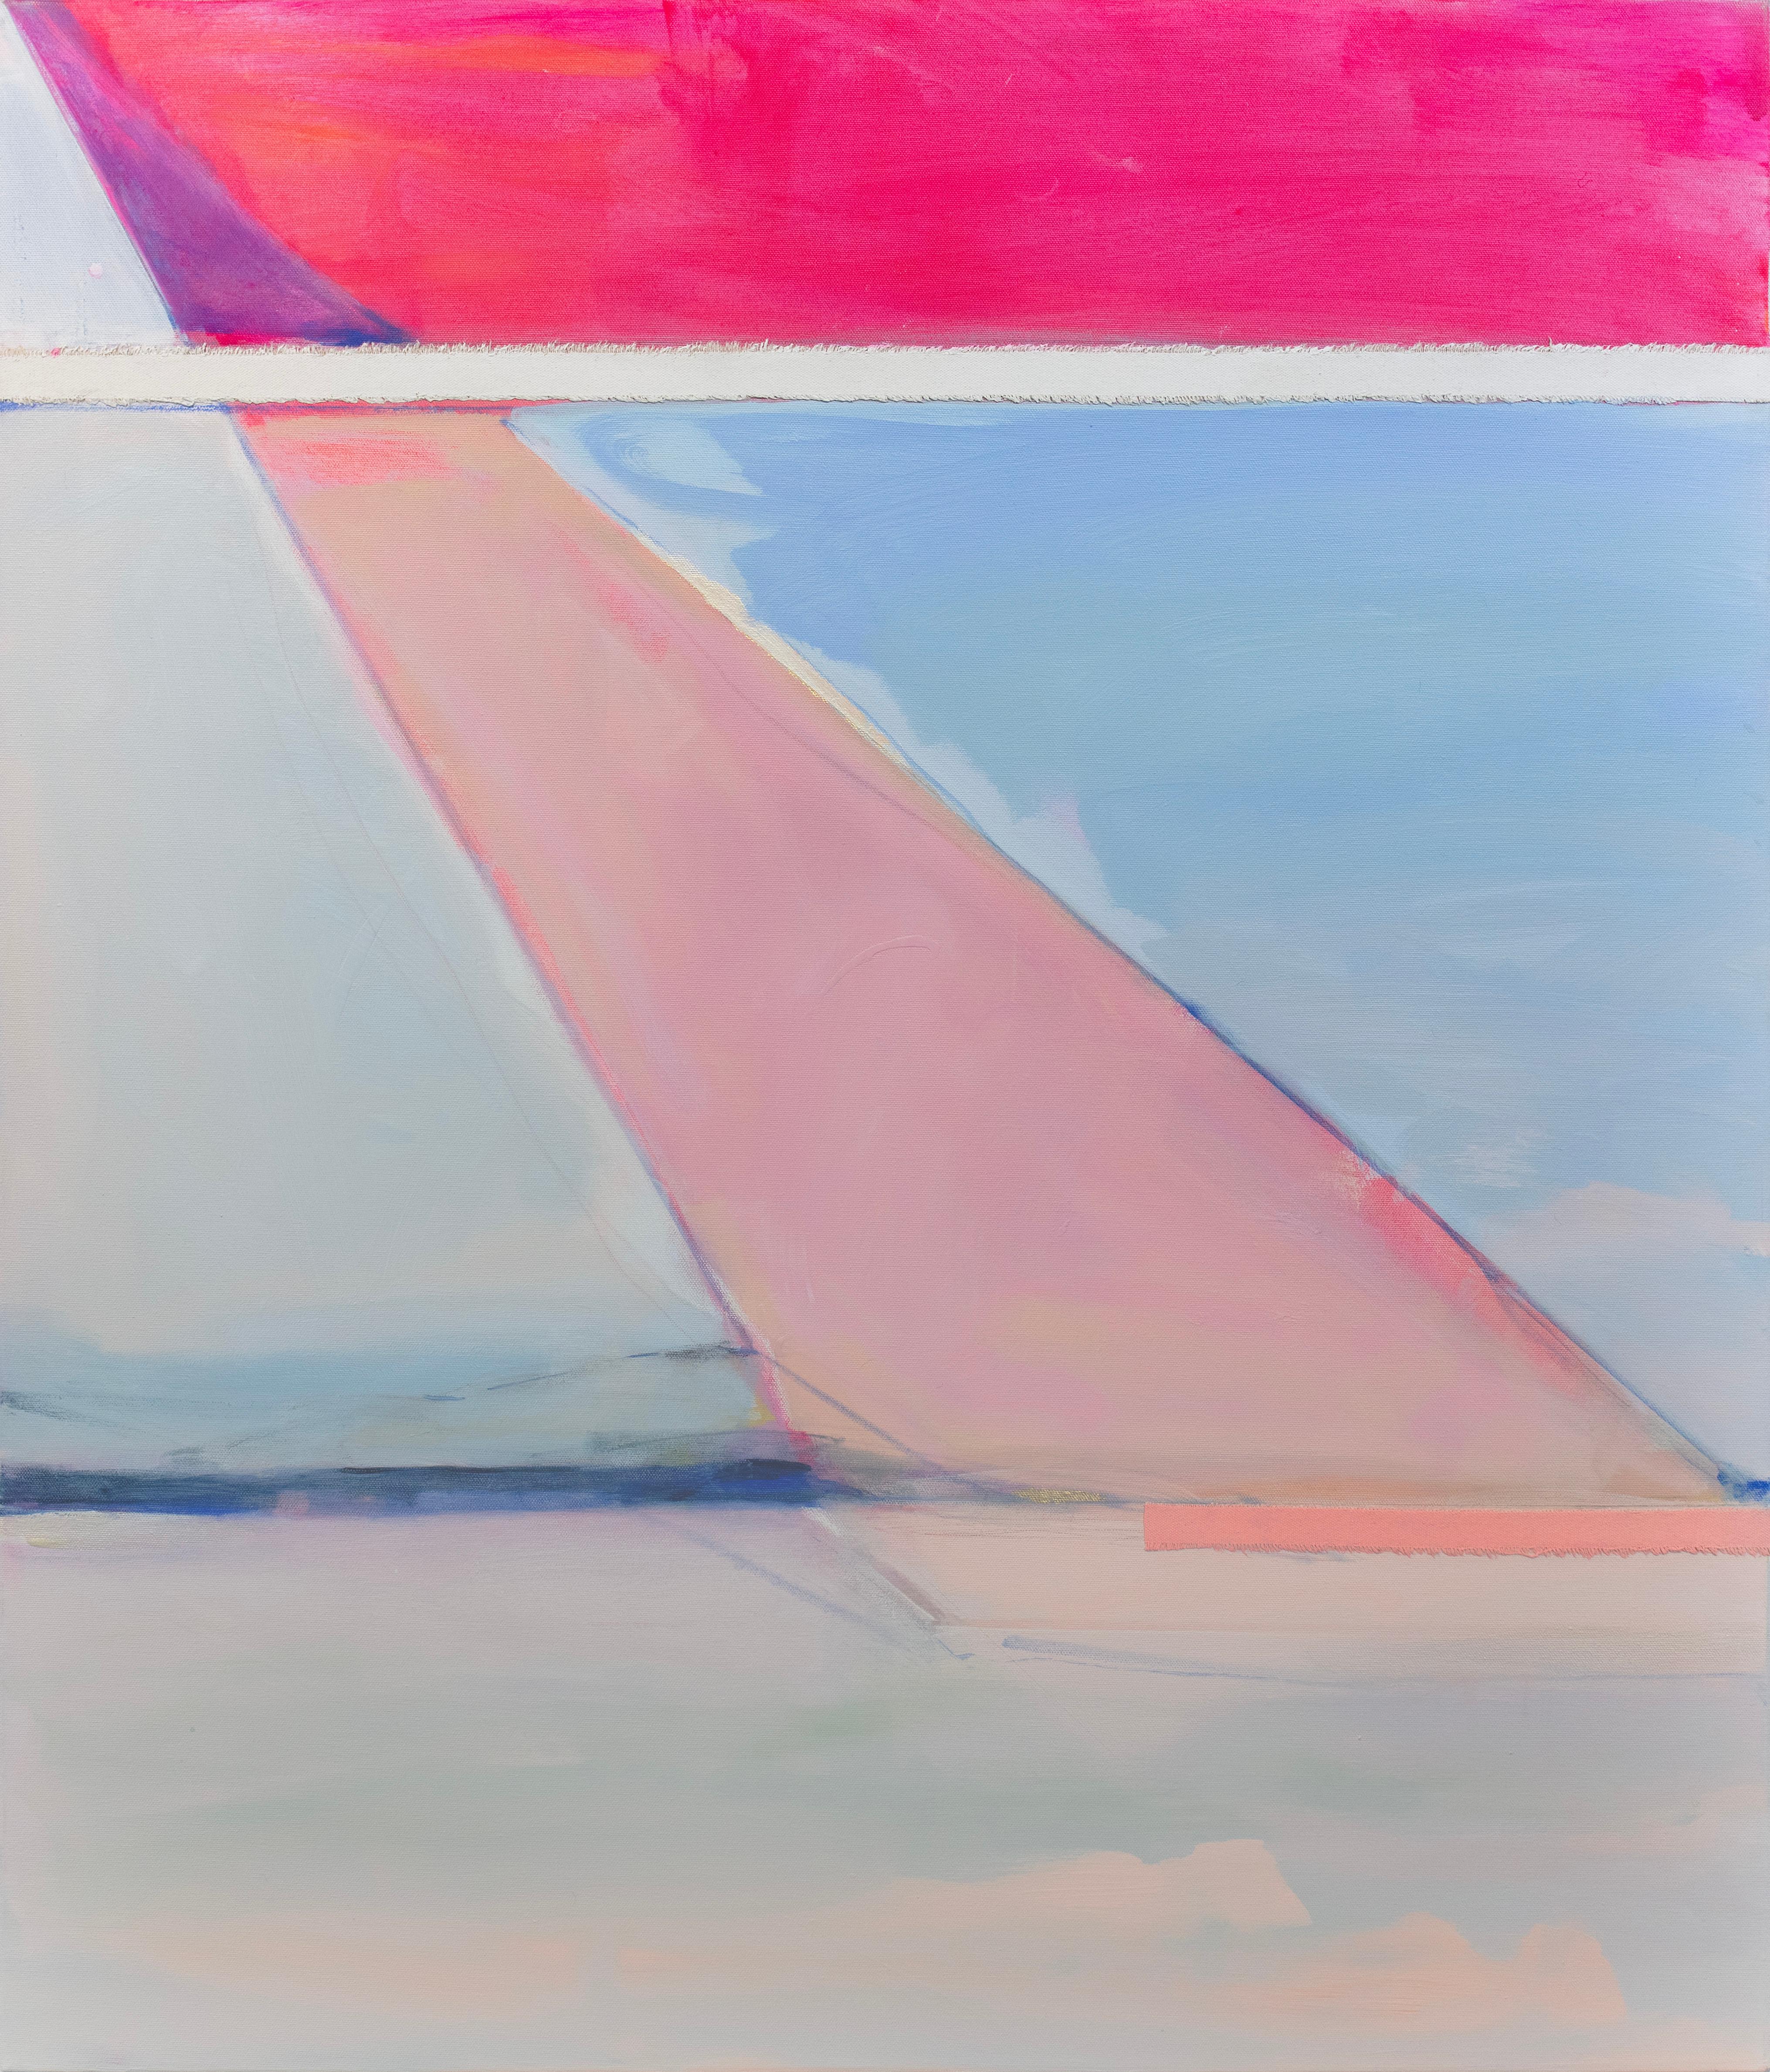 Cette peinture abstraite de Kelly Rossetti est réalisée avec de la peinture acrylique et des morceaux de toile brute assemblés sur une toile enveloppée de galerie. Il présente une palette rose et bleue avec des lignes, des formes et des marques